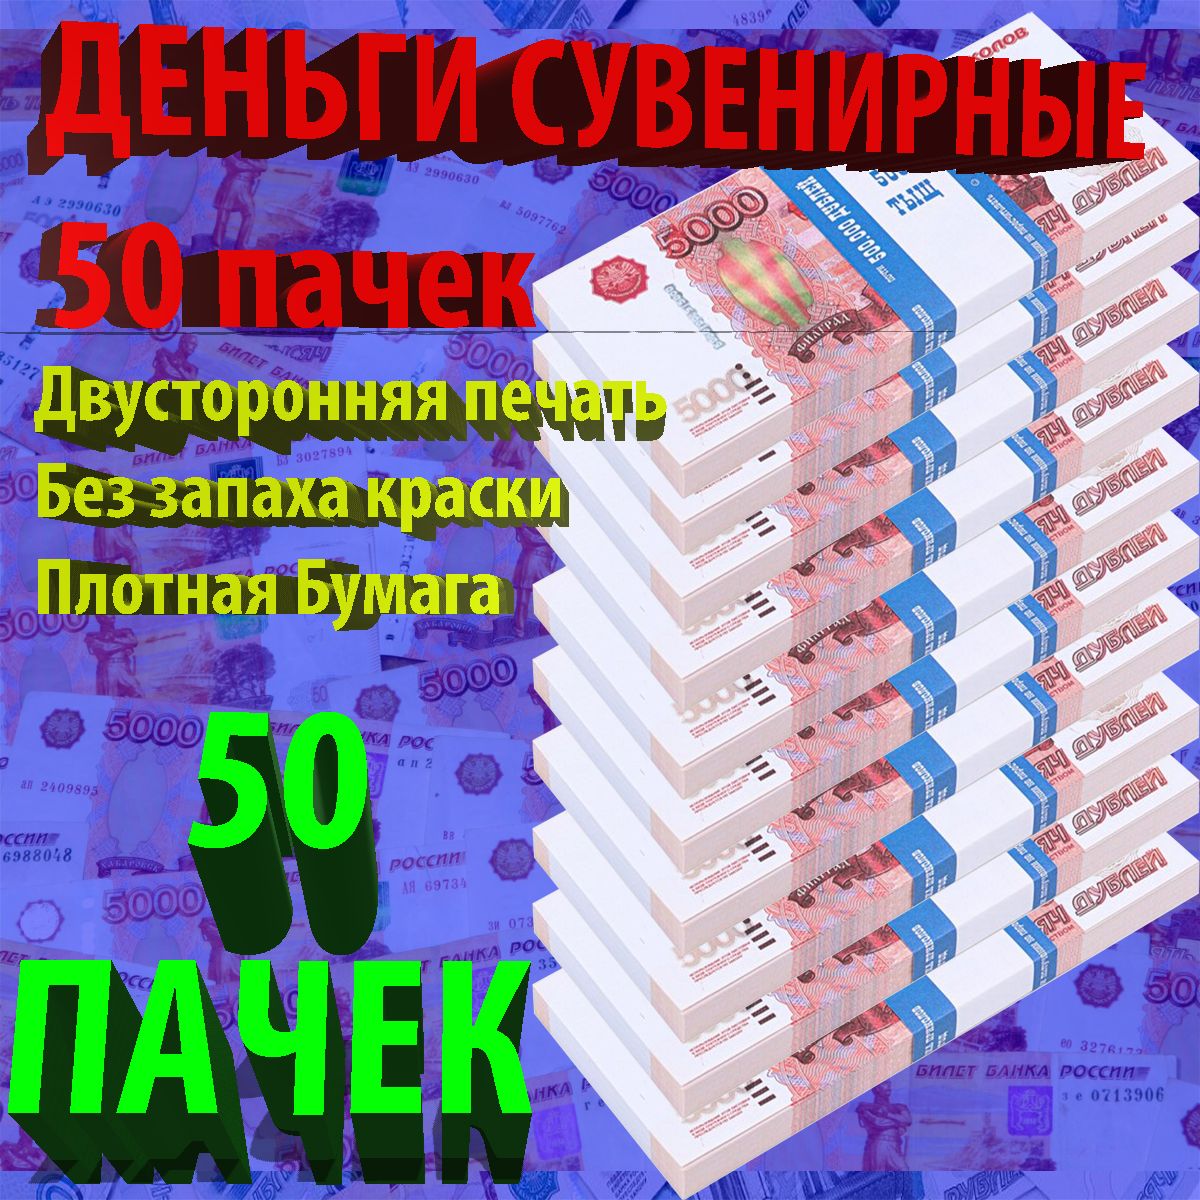 СувенирныеденьгиРоссийскиерублиноминал5000-50пачек